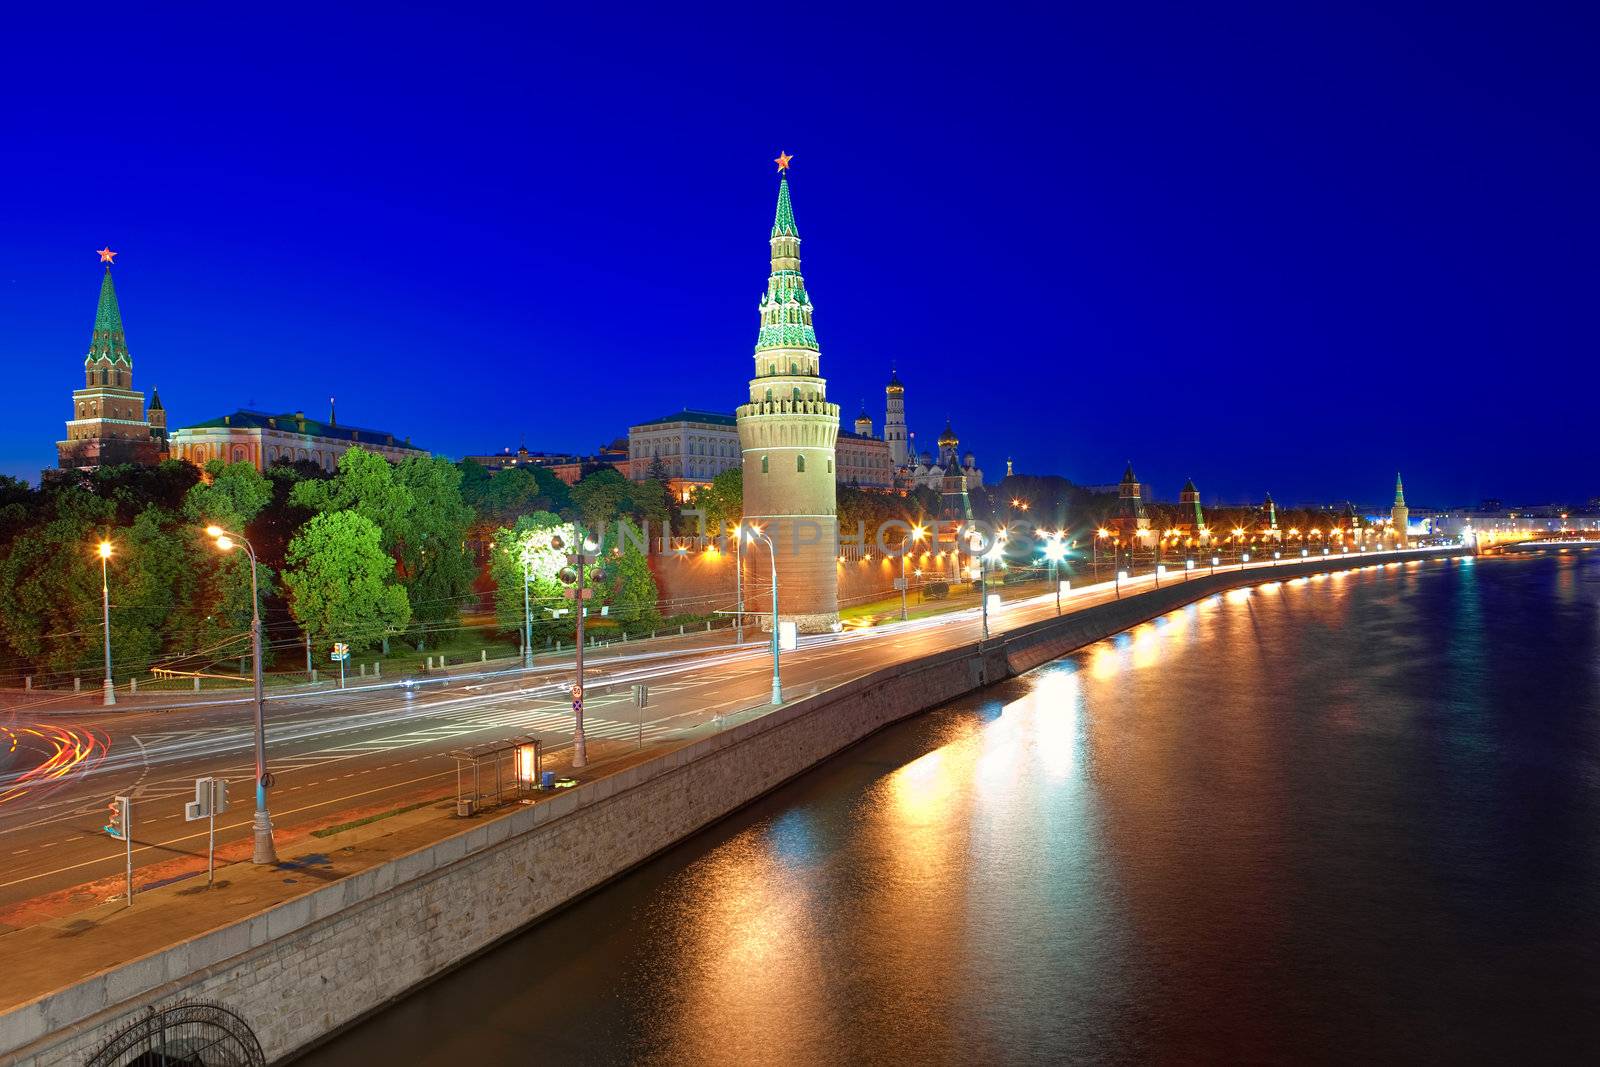 Moscow Kremlin and Kremlin Embankment at night. by vladimir_sklyarov